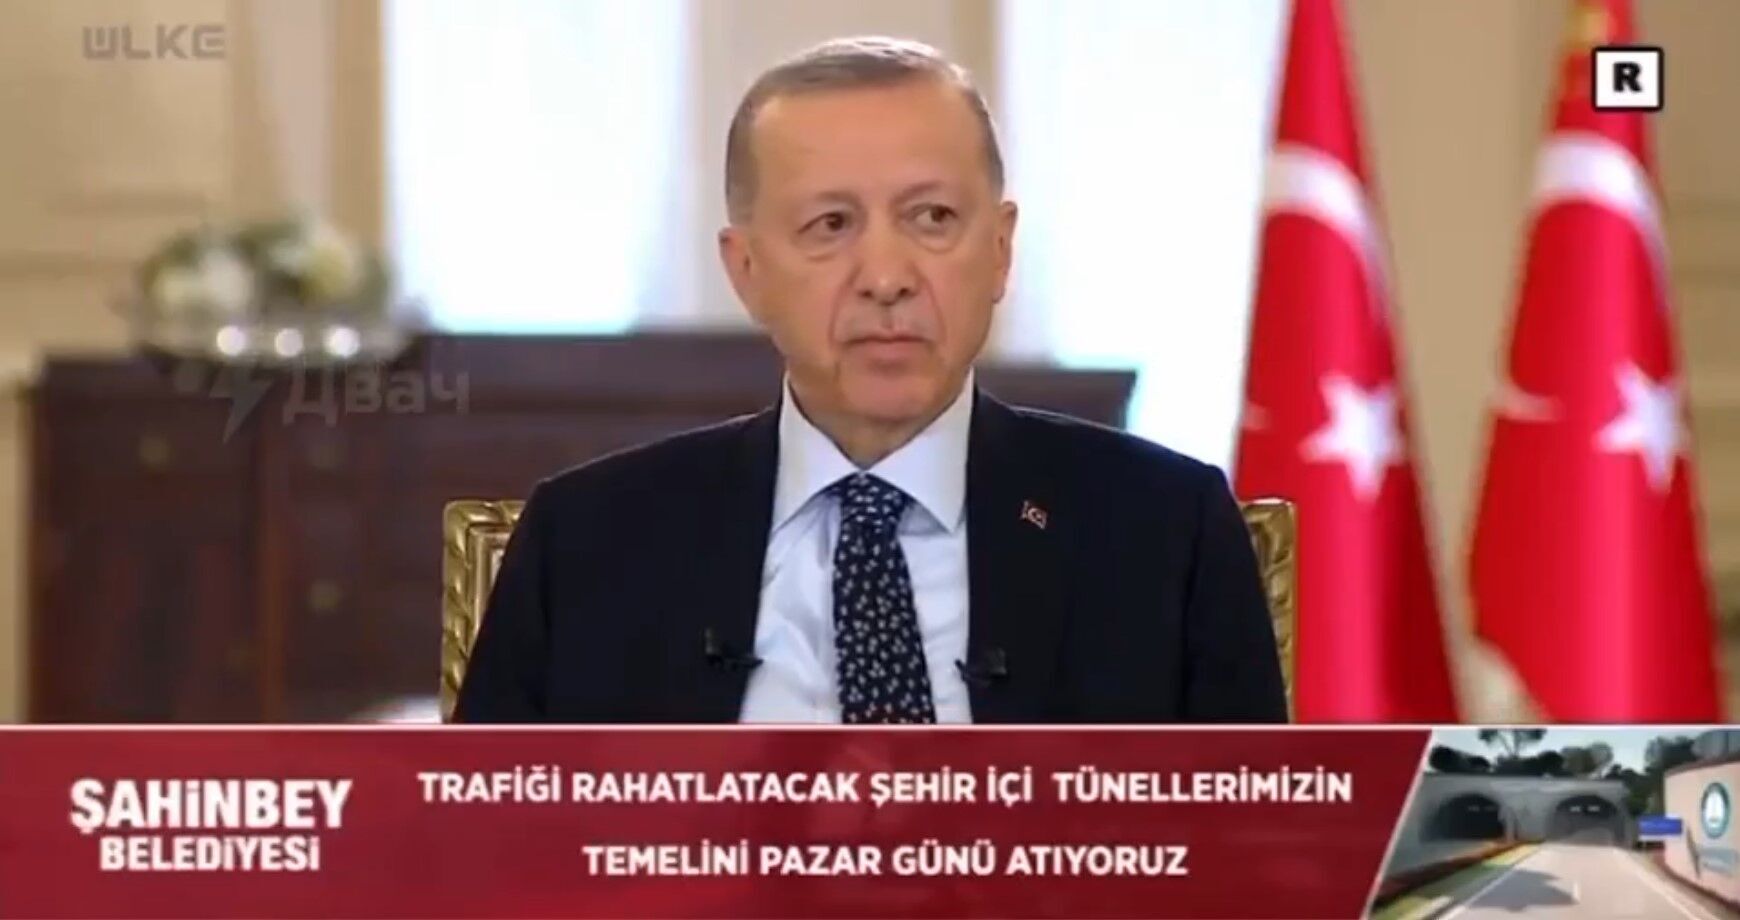 Эрдогану стало плохо в прямом эфире, трансляцию прервали: что произошло. Видео